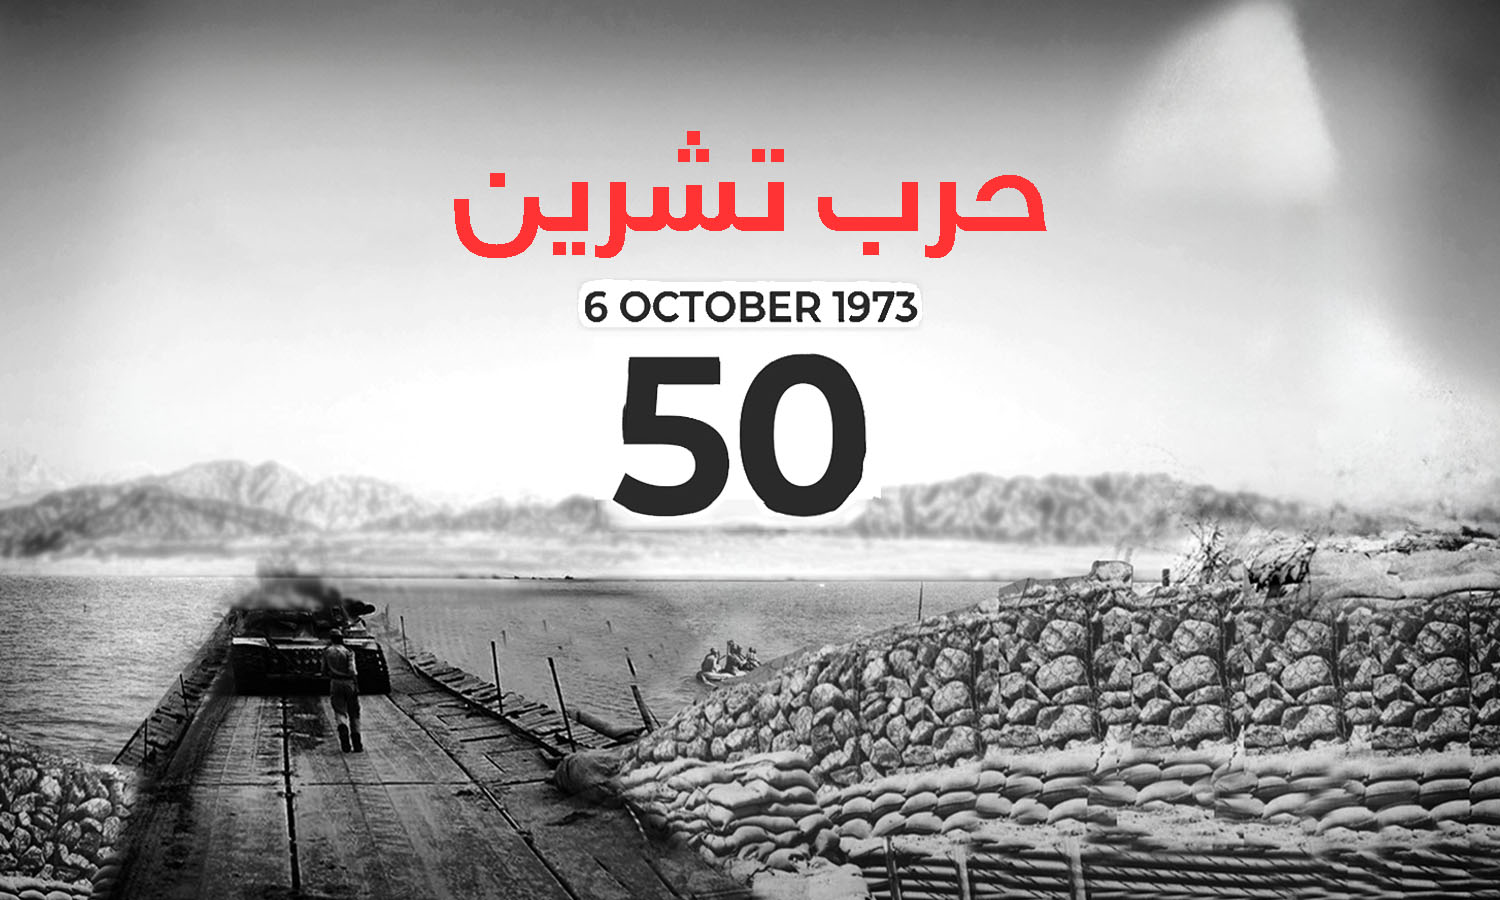 تعبيرية عن حرب تشرين عام 1973 (تصميم عنب بلدي)